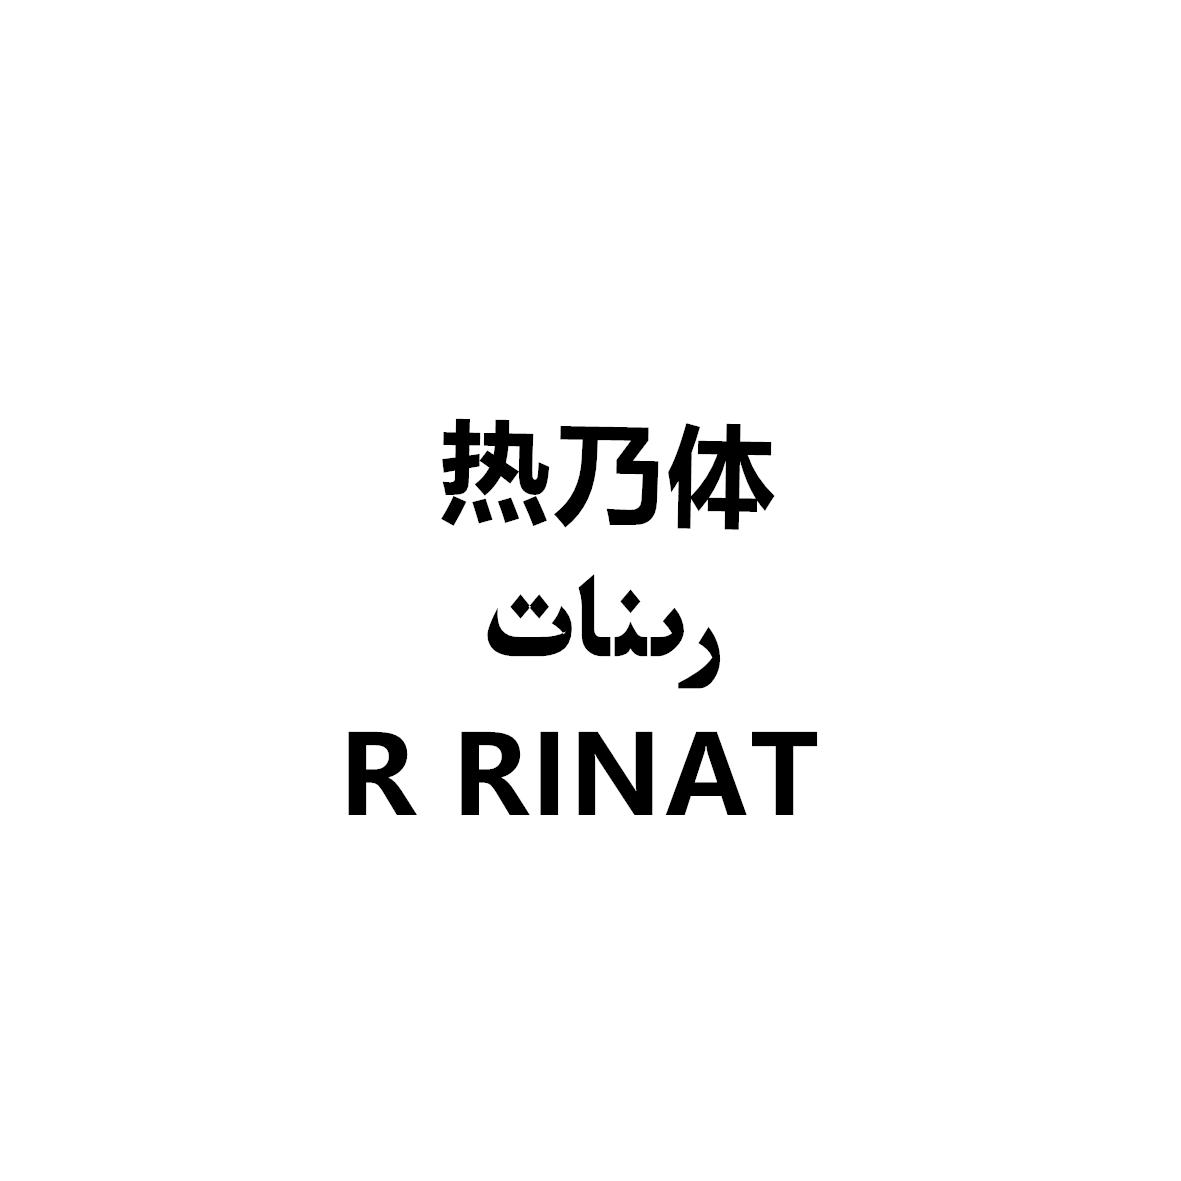 热乃体 R RINAT 商标公告